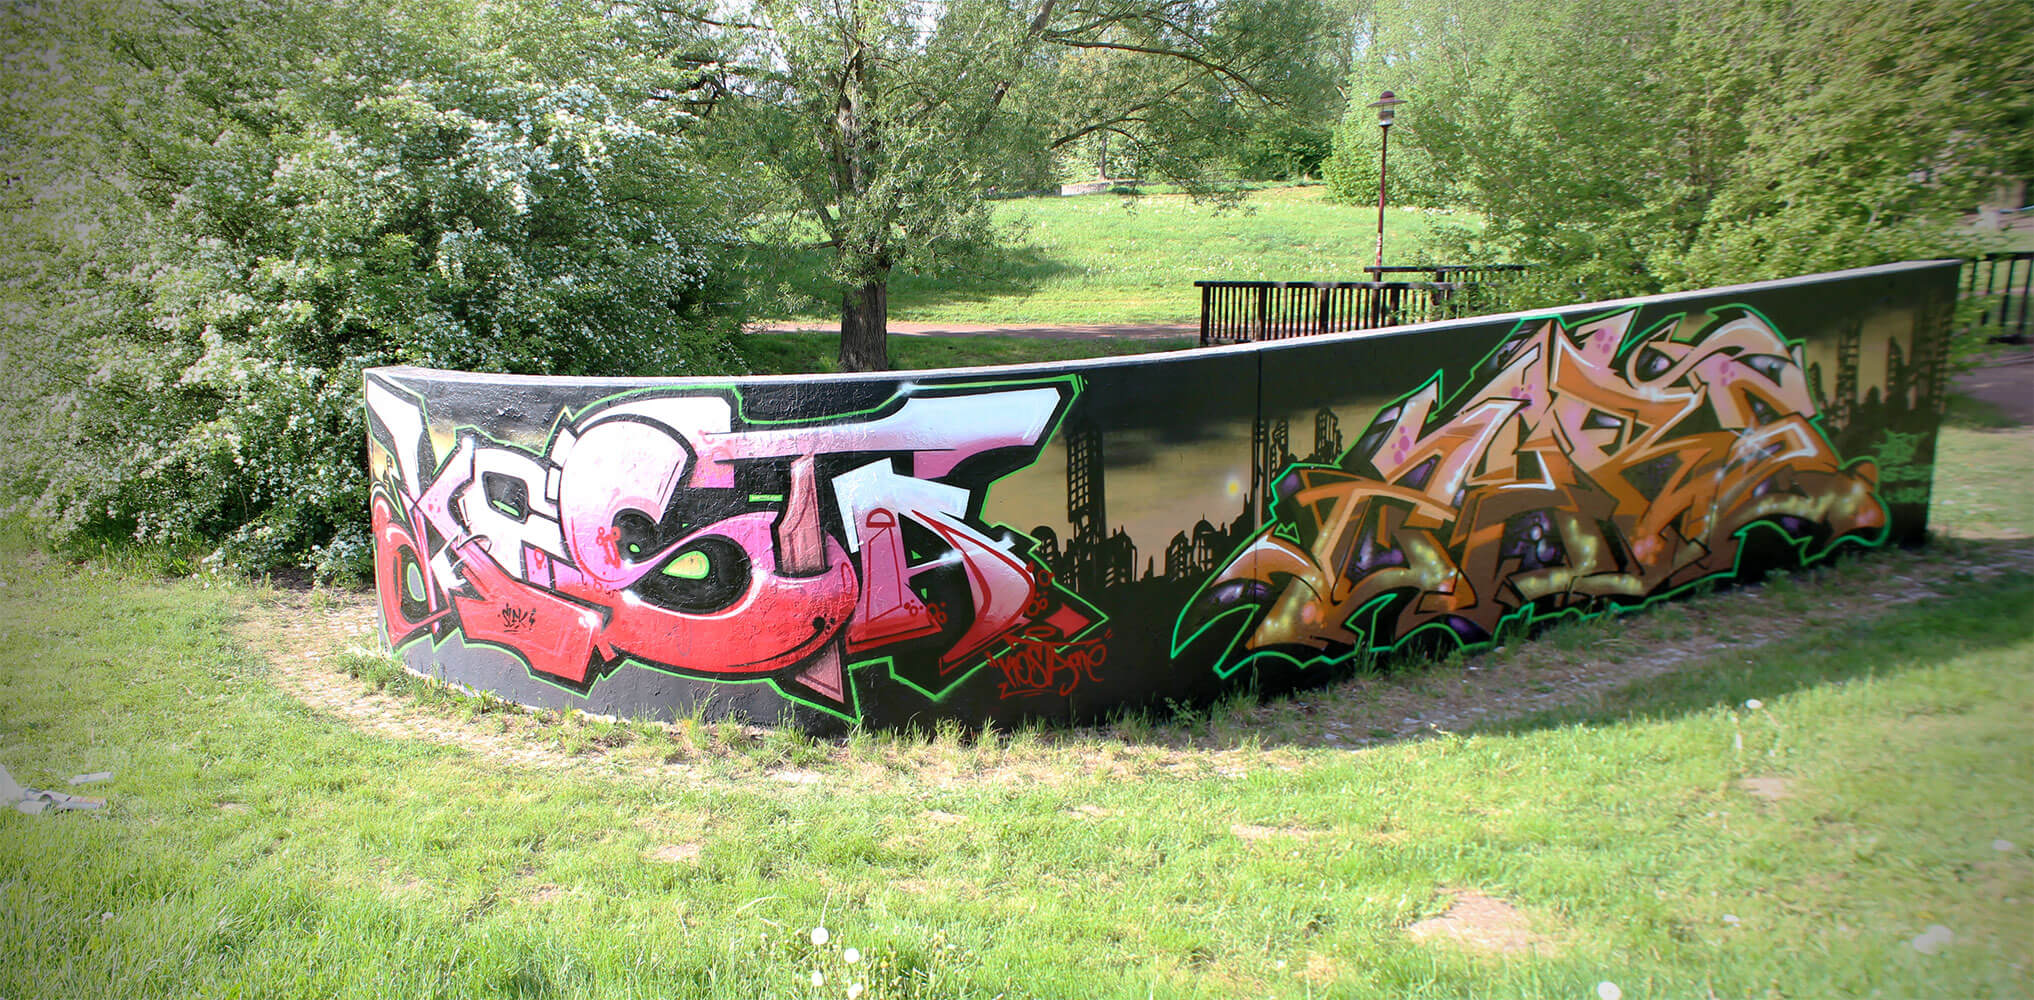 Kosta and Zare Graffiti in a Park 2015